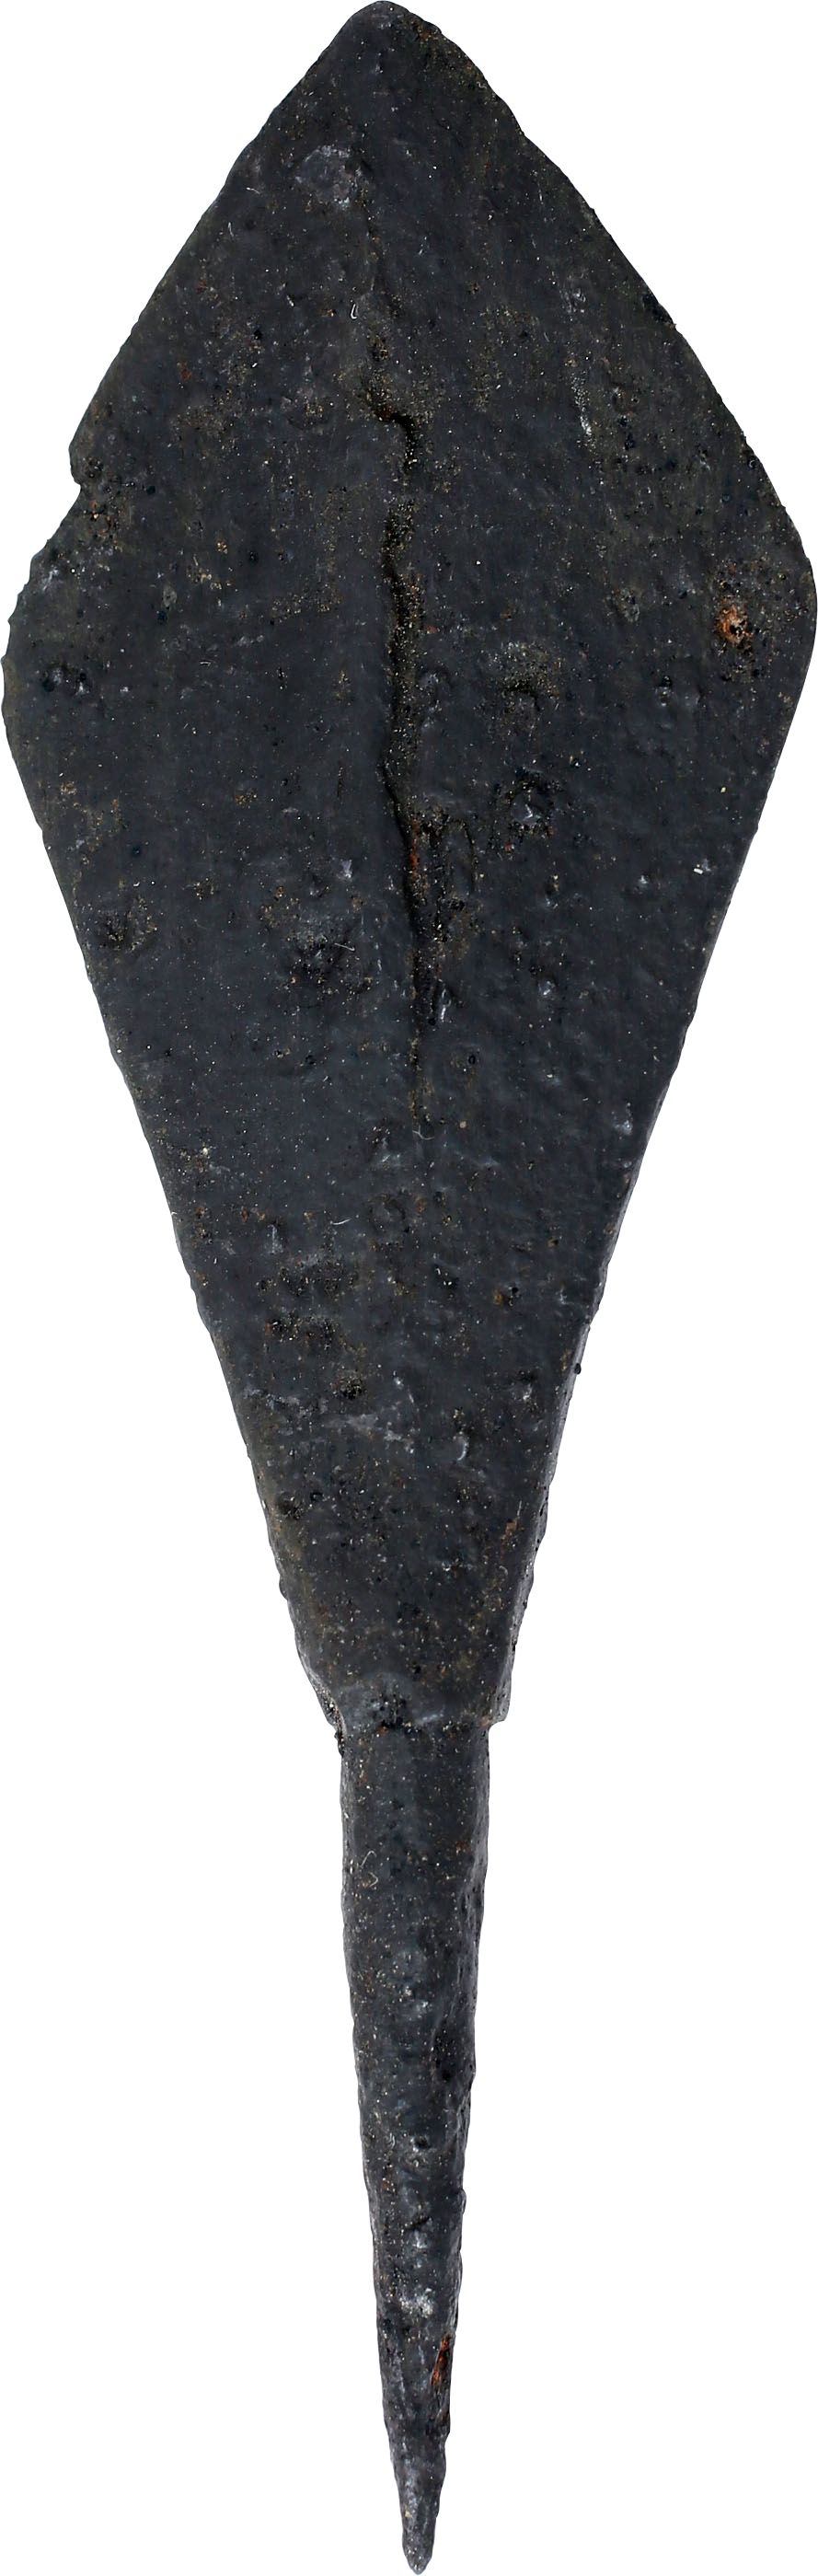 FINE VIKING TANGED ARROWHEAD, C. 9th-10th CENTURY - Fagan Arms